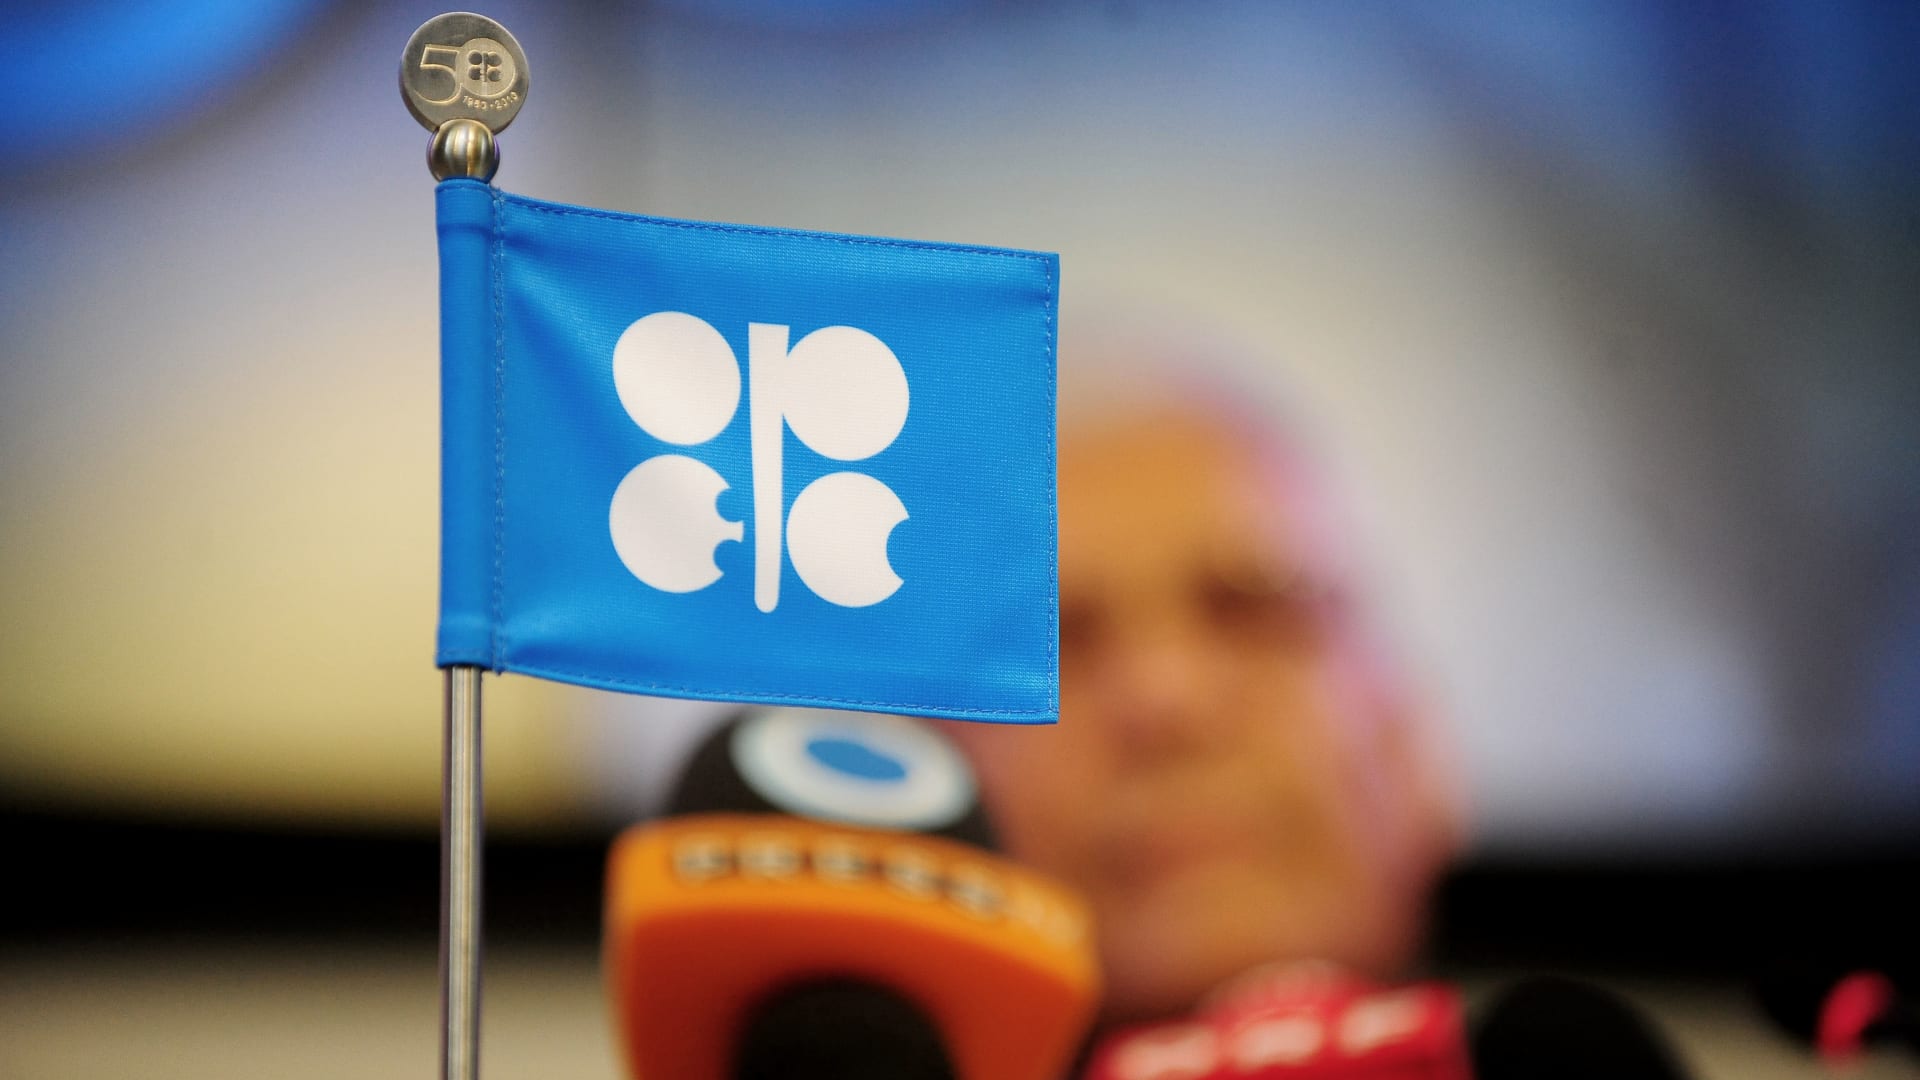 ارتفاع أسعار النفط مع رفض الإمارات دعم اتفاق أوبك+.. إلى أين تتجه الأمور؟